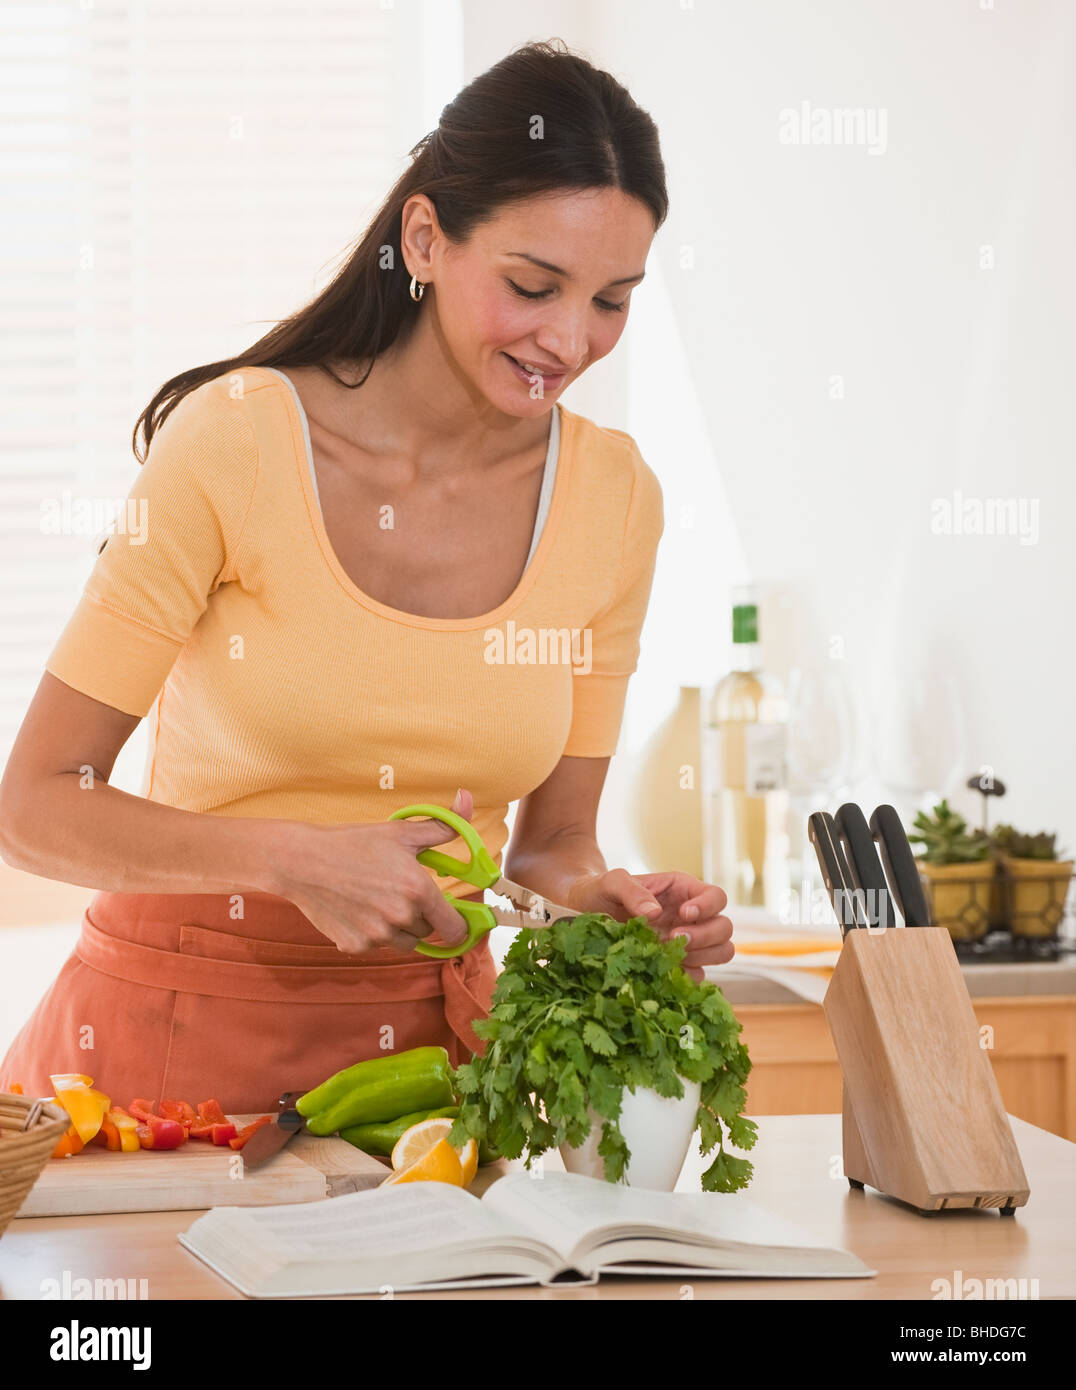 Hispanic woman cutting herbs Stock Photo